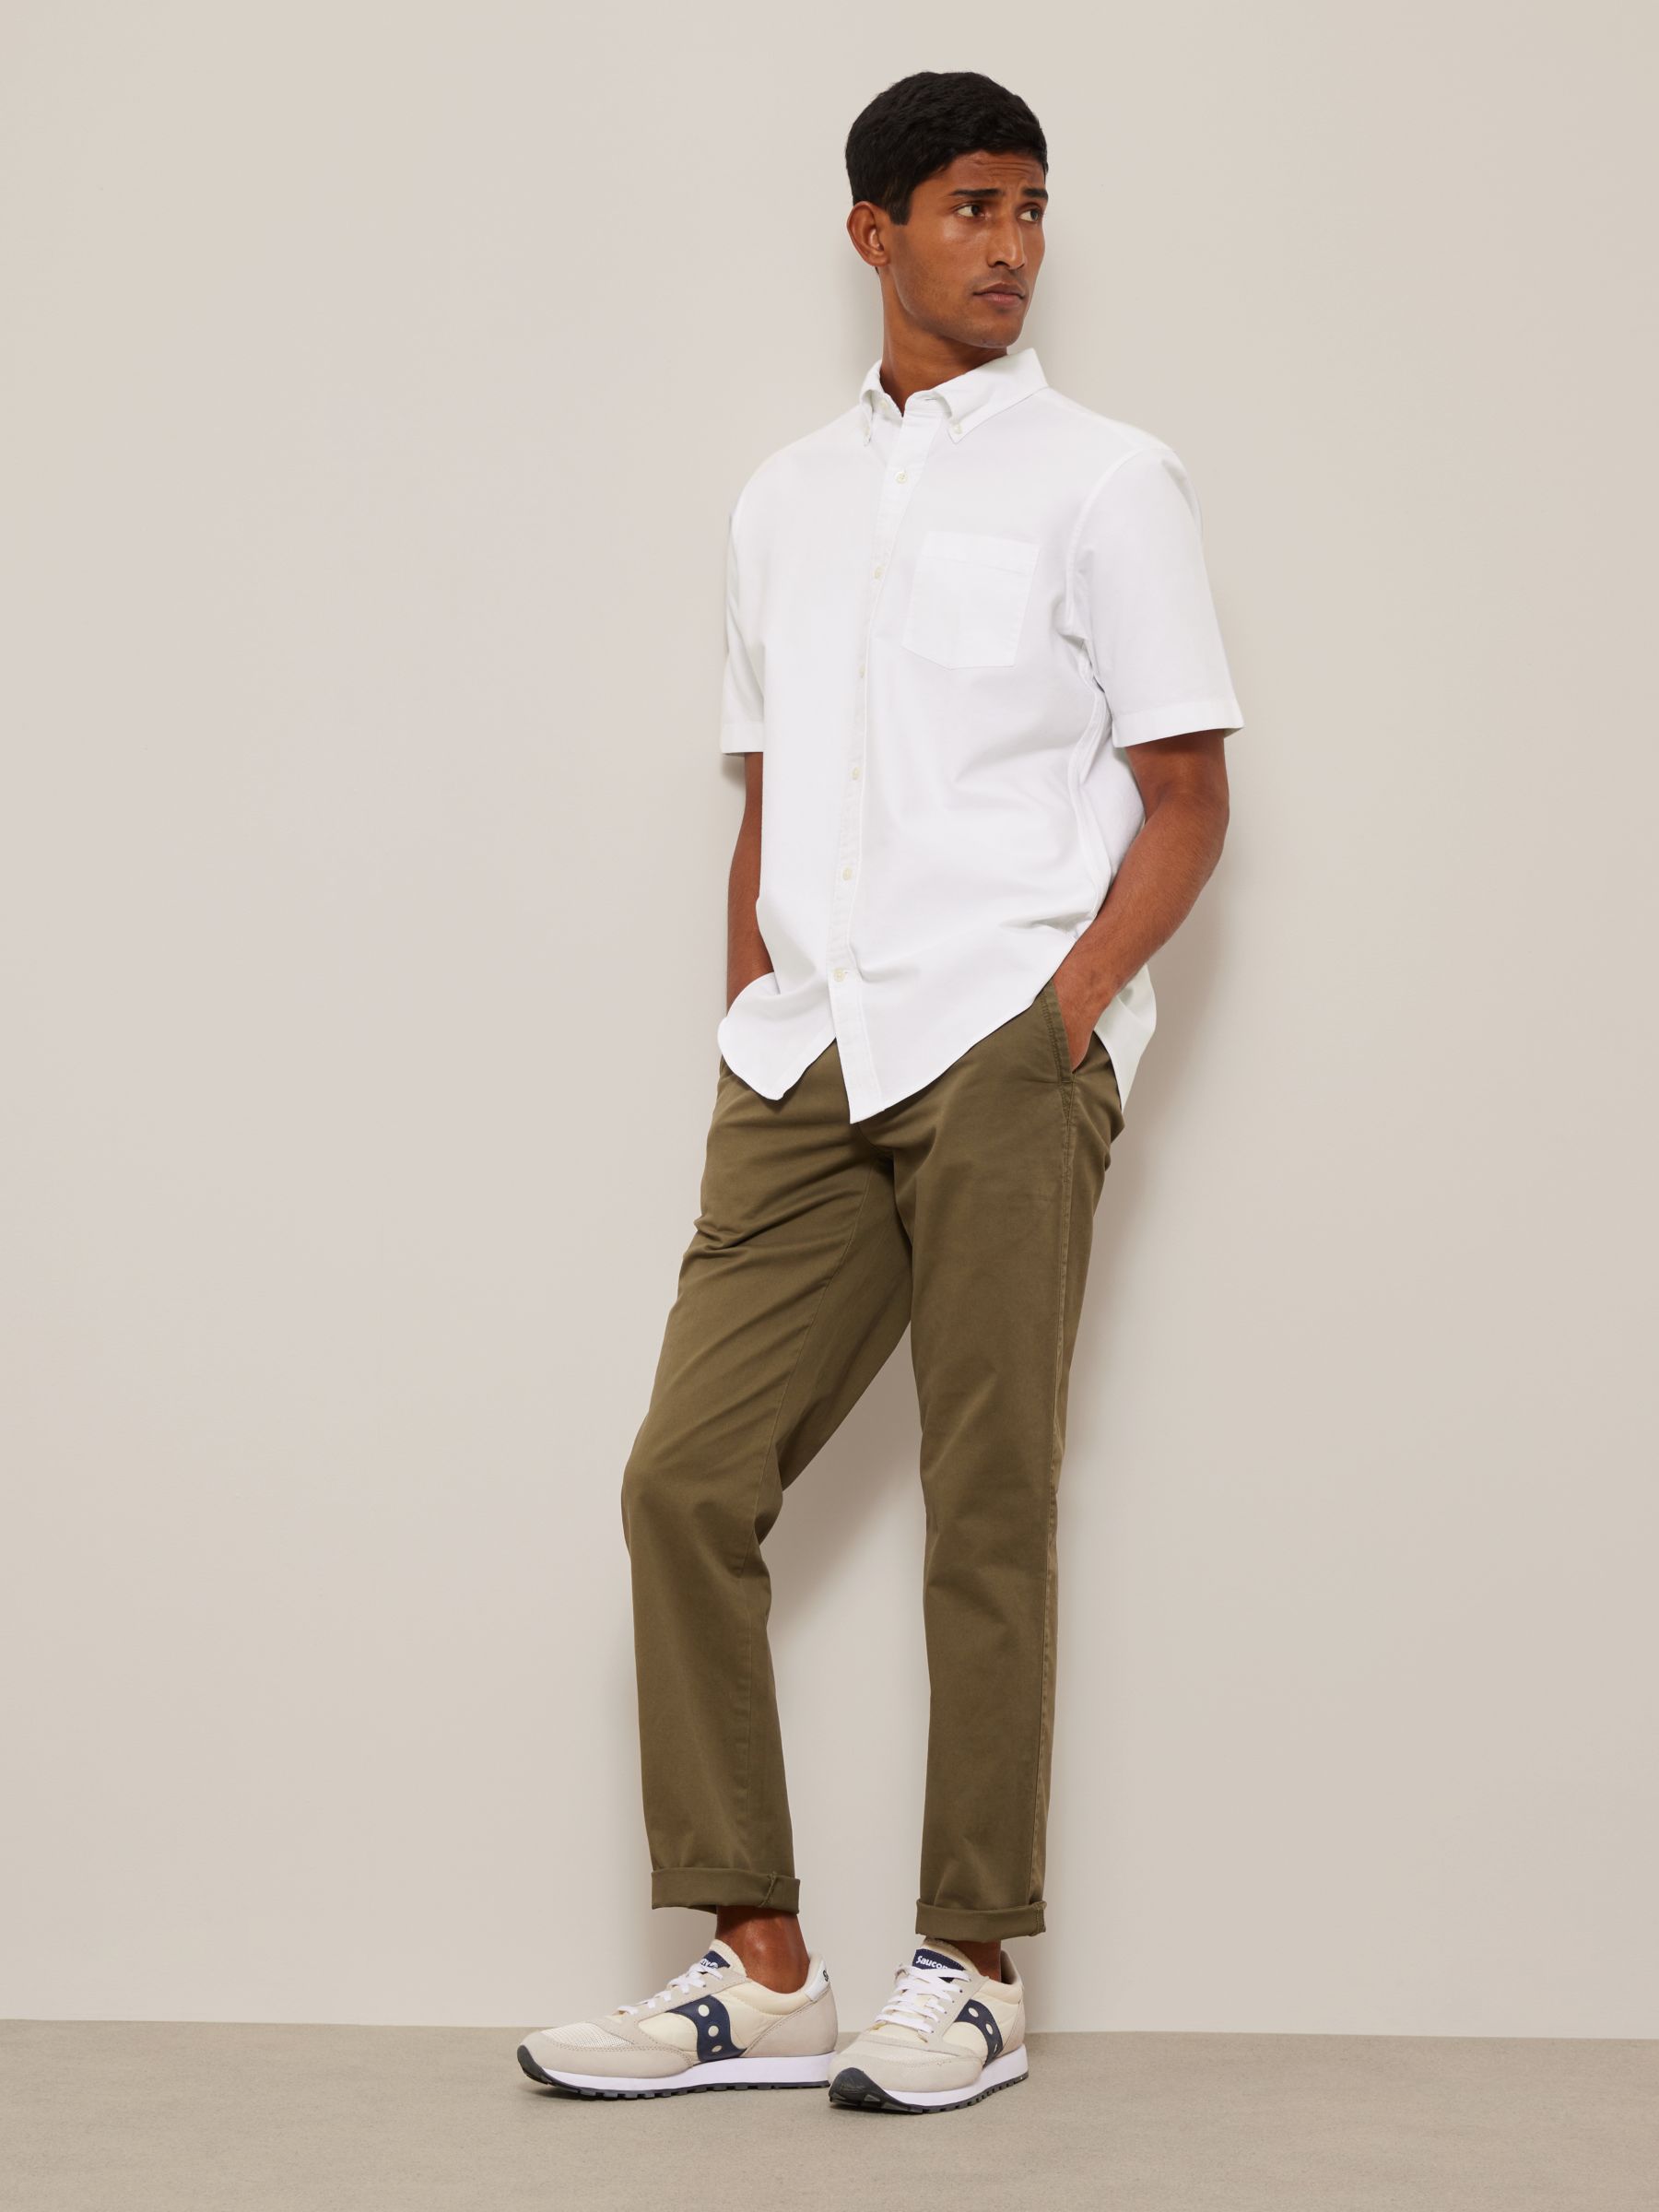 John Lewis Regular Fit Short Sleeve Shirt, White at John Lewis & Partners